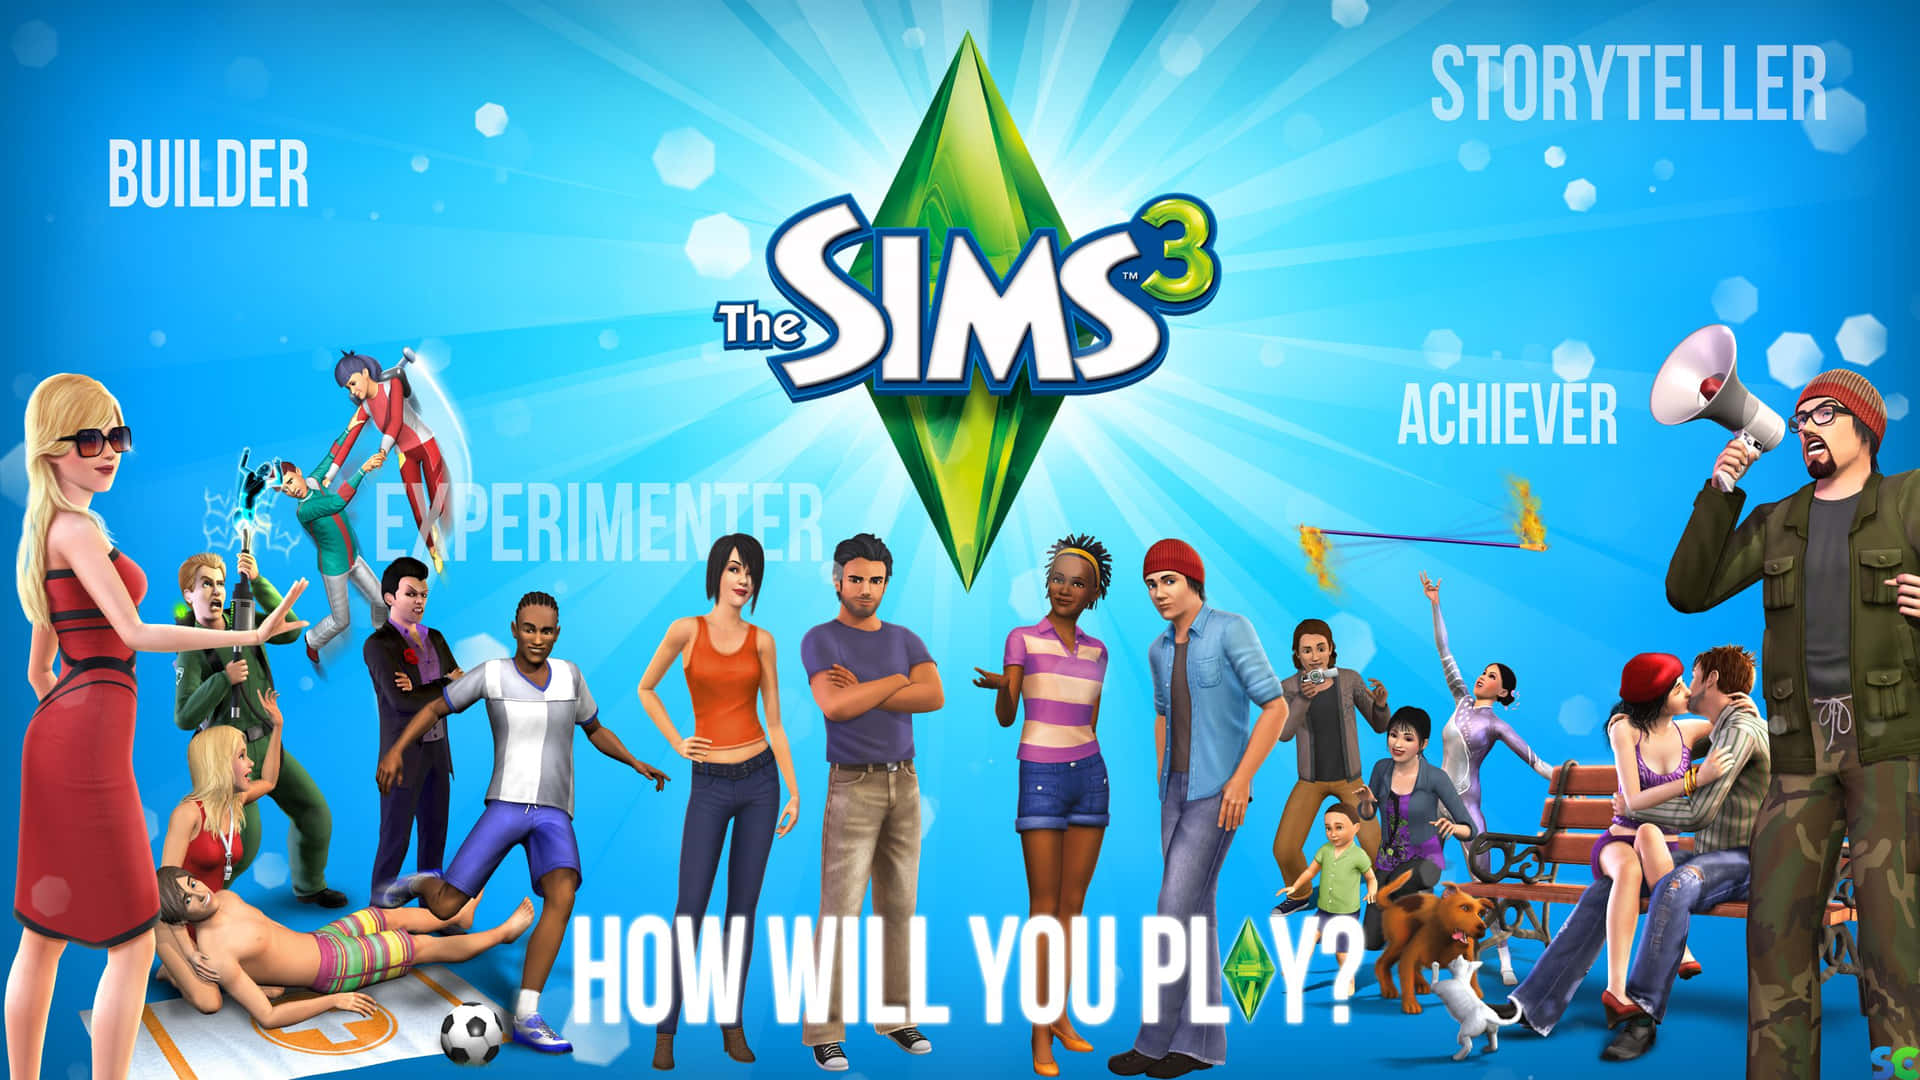 the sims 3 - Hvordan vil du spille? Wallpaper